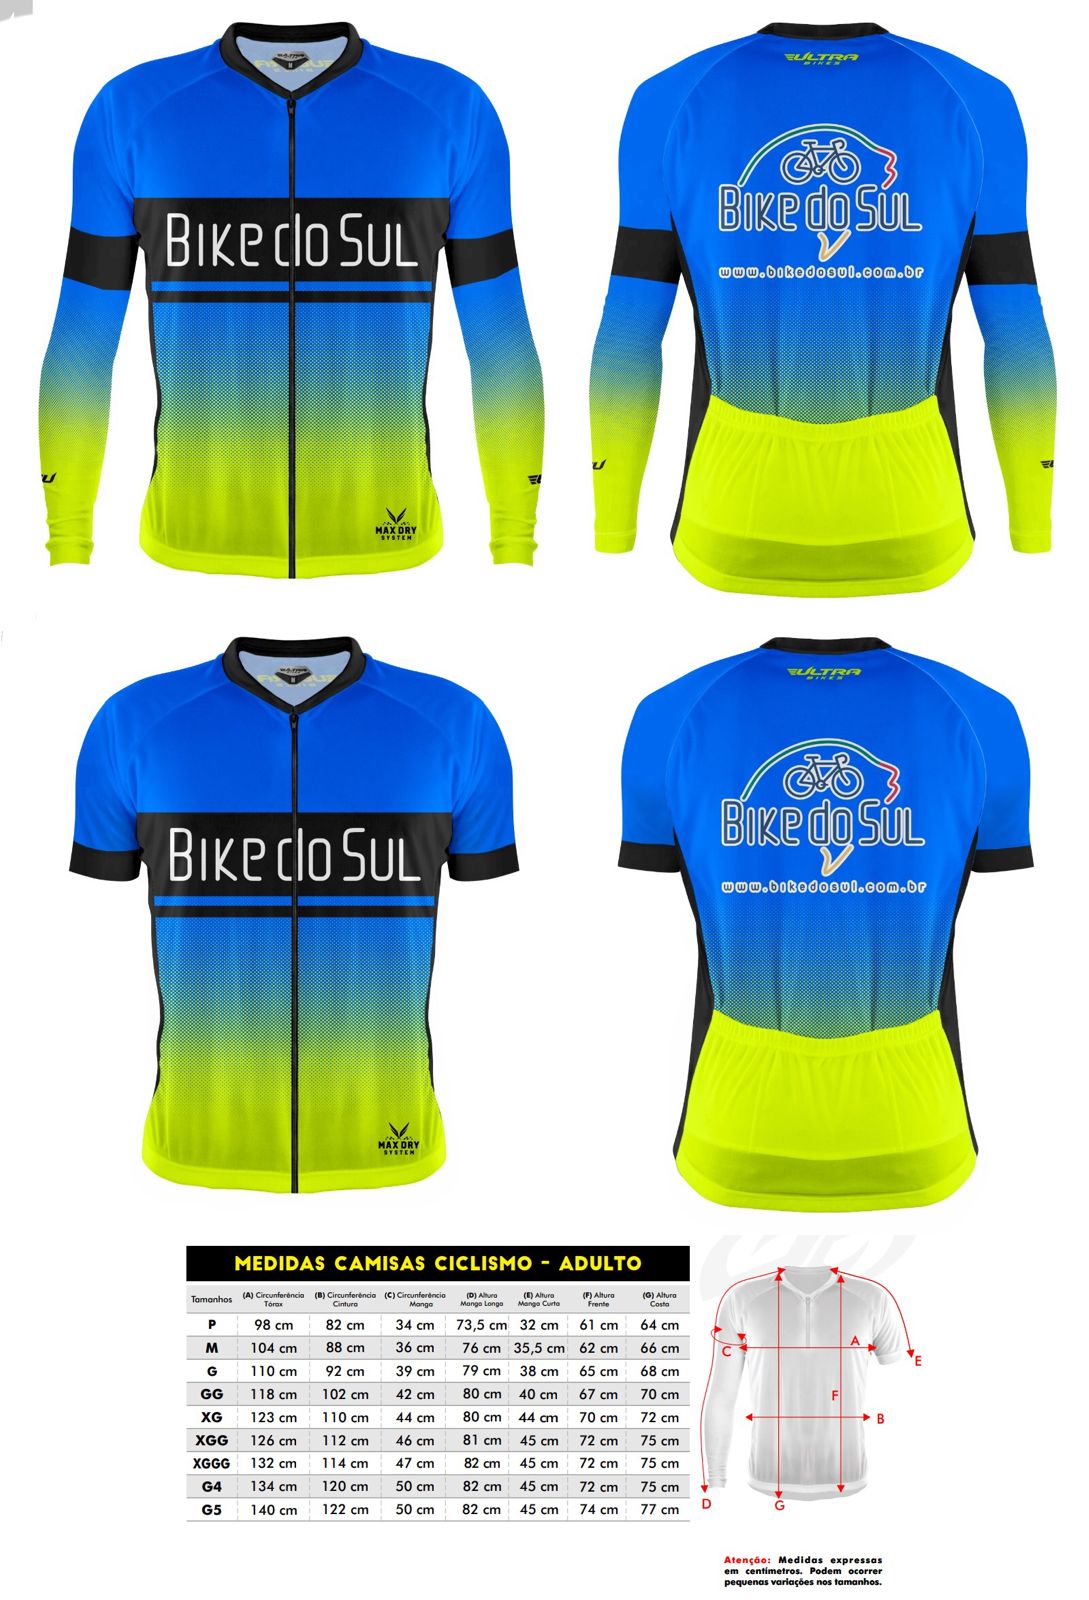 Novo lote de camisas Bike do Sul